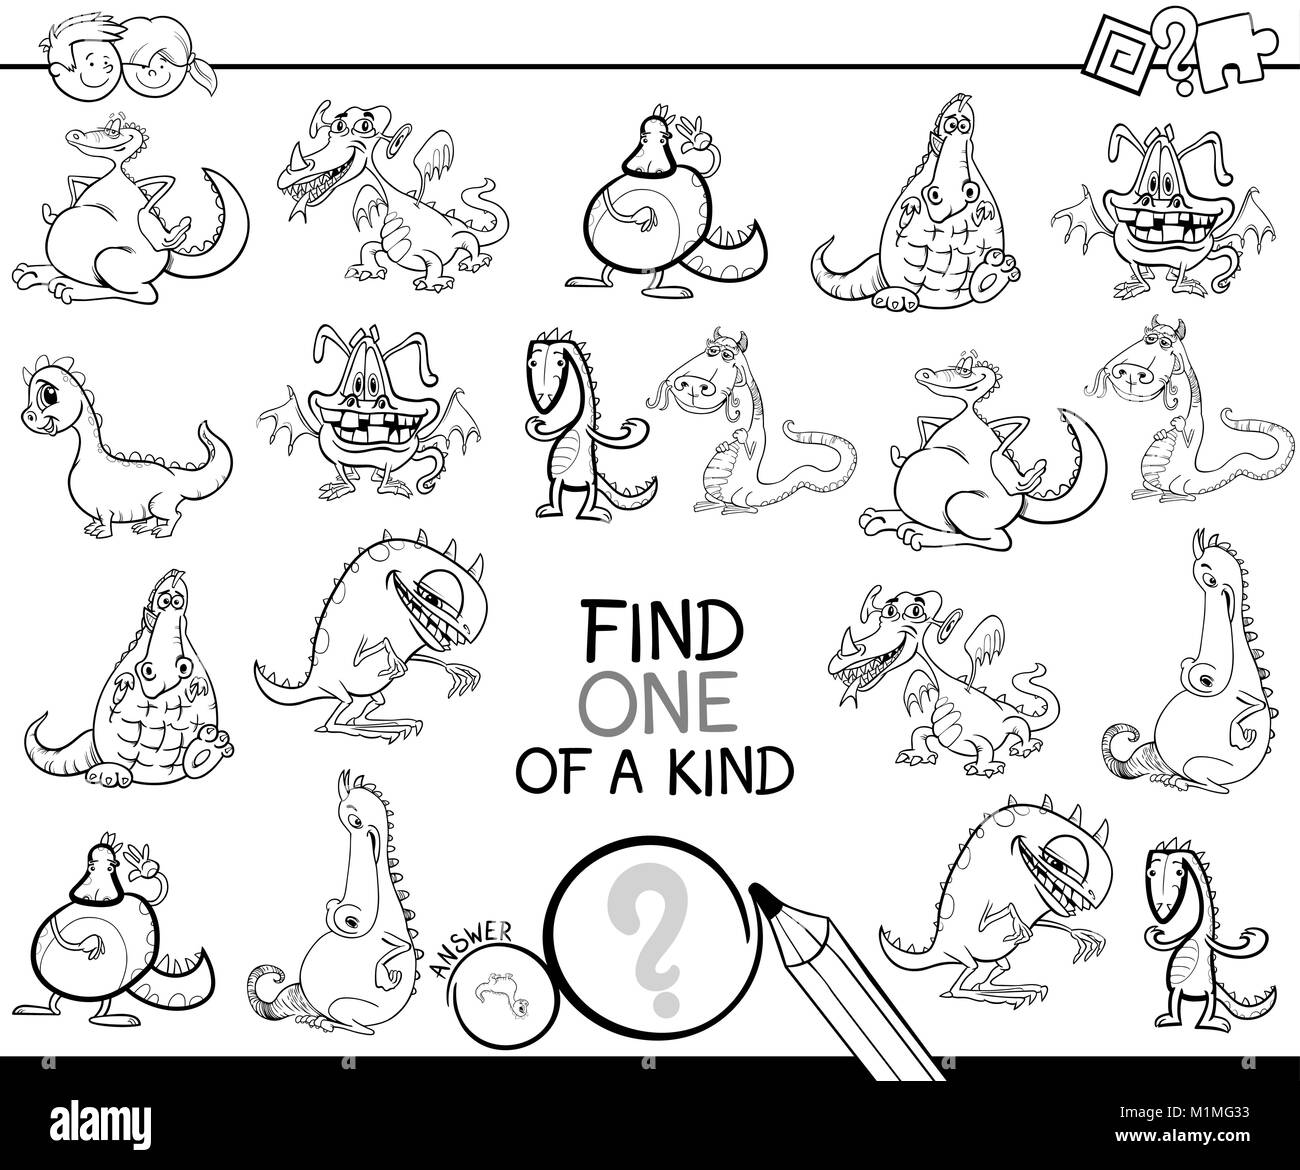 Bianco e Nero Cartoon illustrazione di trovare un tipo di immagine attività didattica gioco per bambini con draghi Fantasy animali colore dei caratteri Illustrazione Vettoriale